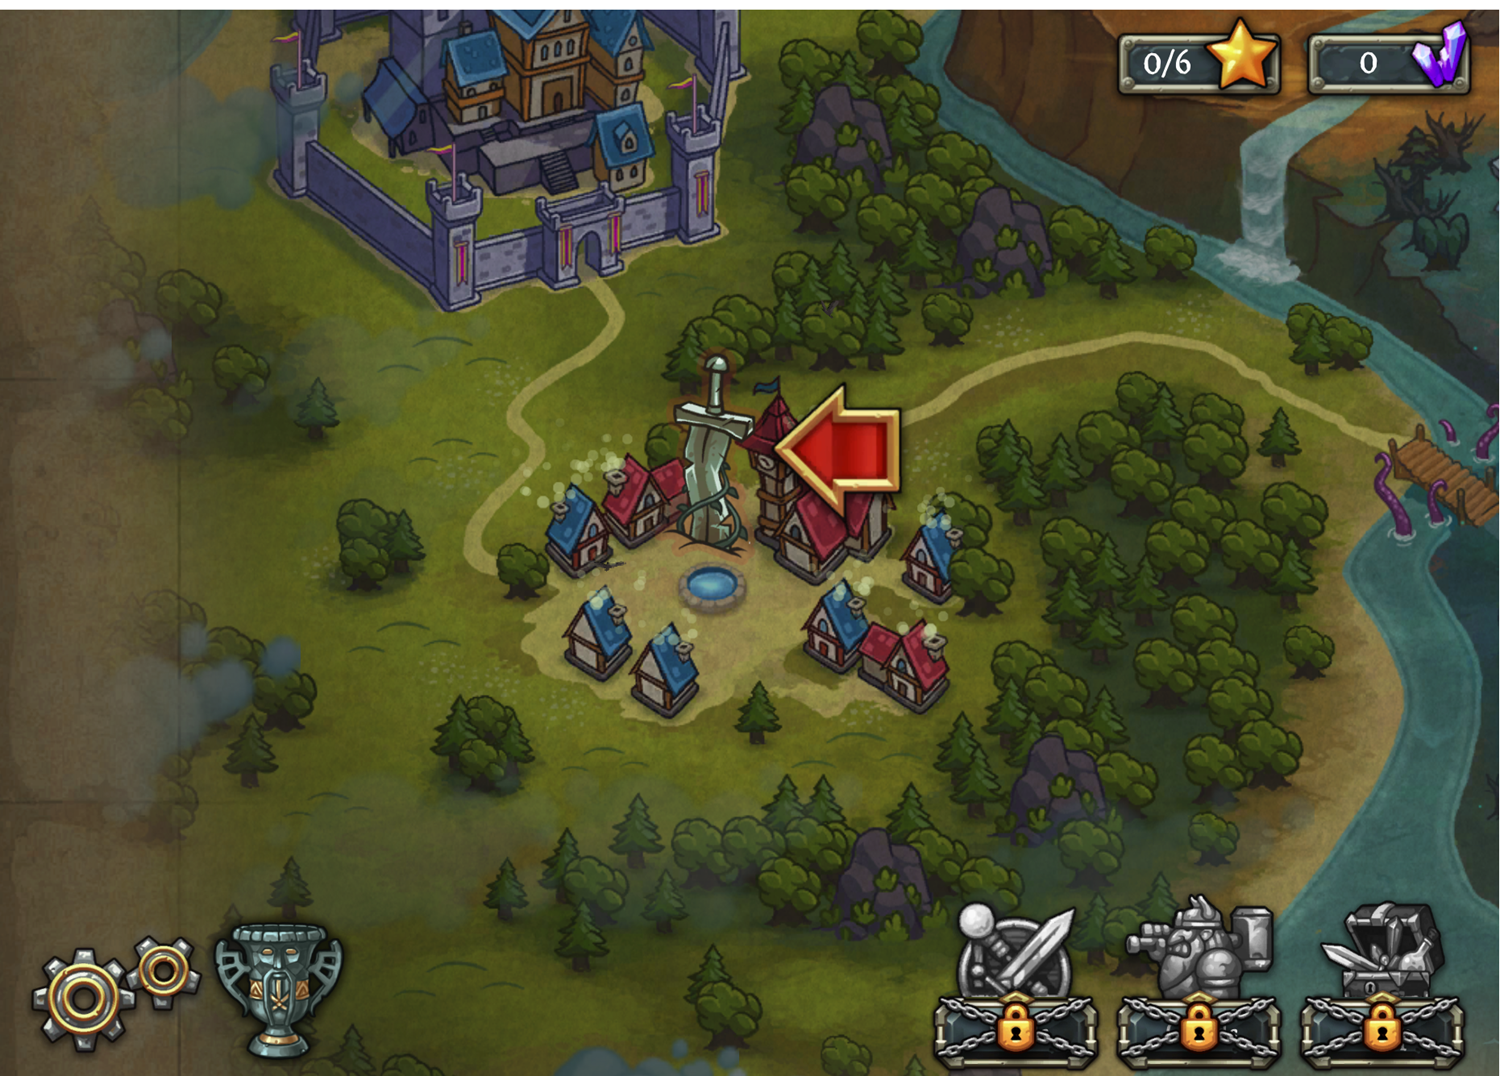 Defentures Game Overview Map Screen Screenshot.